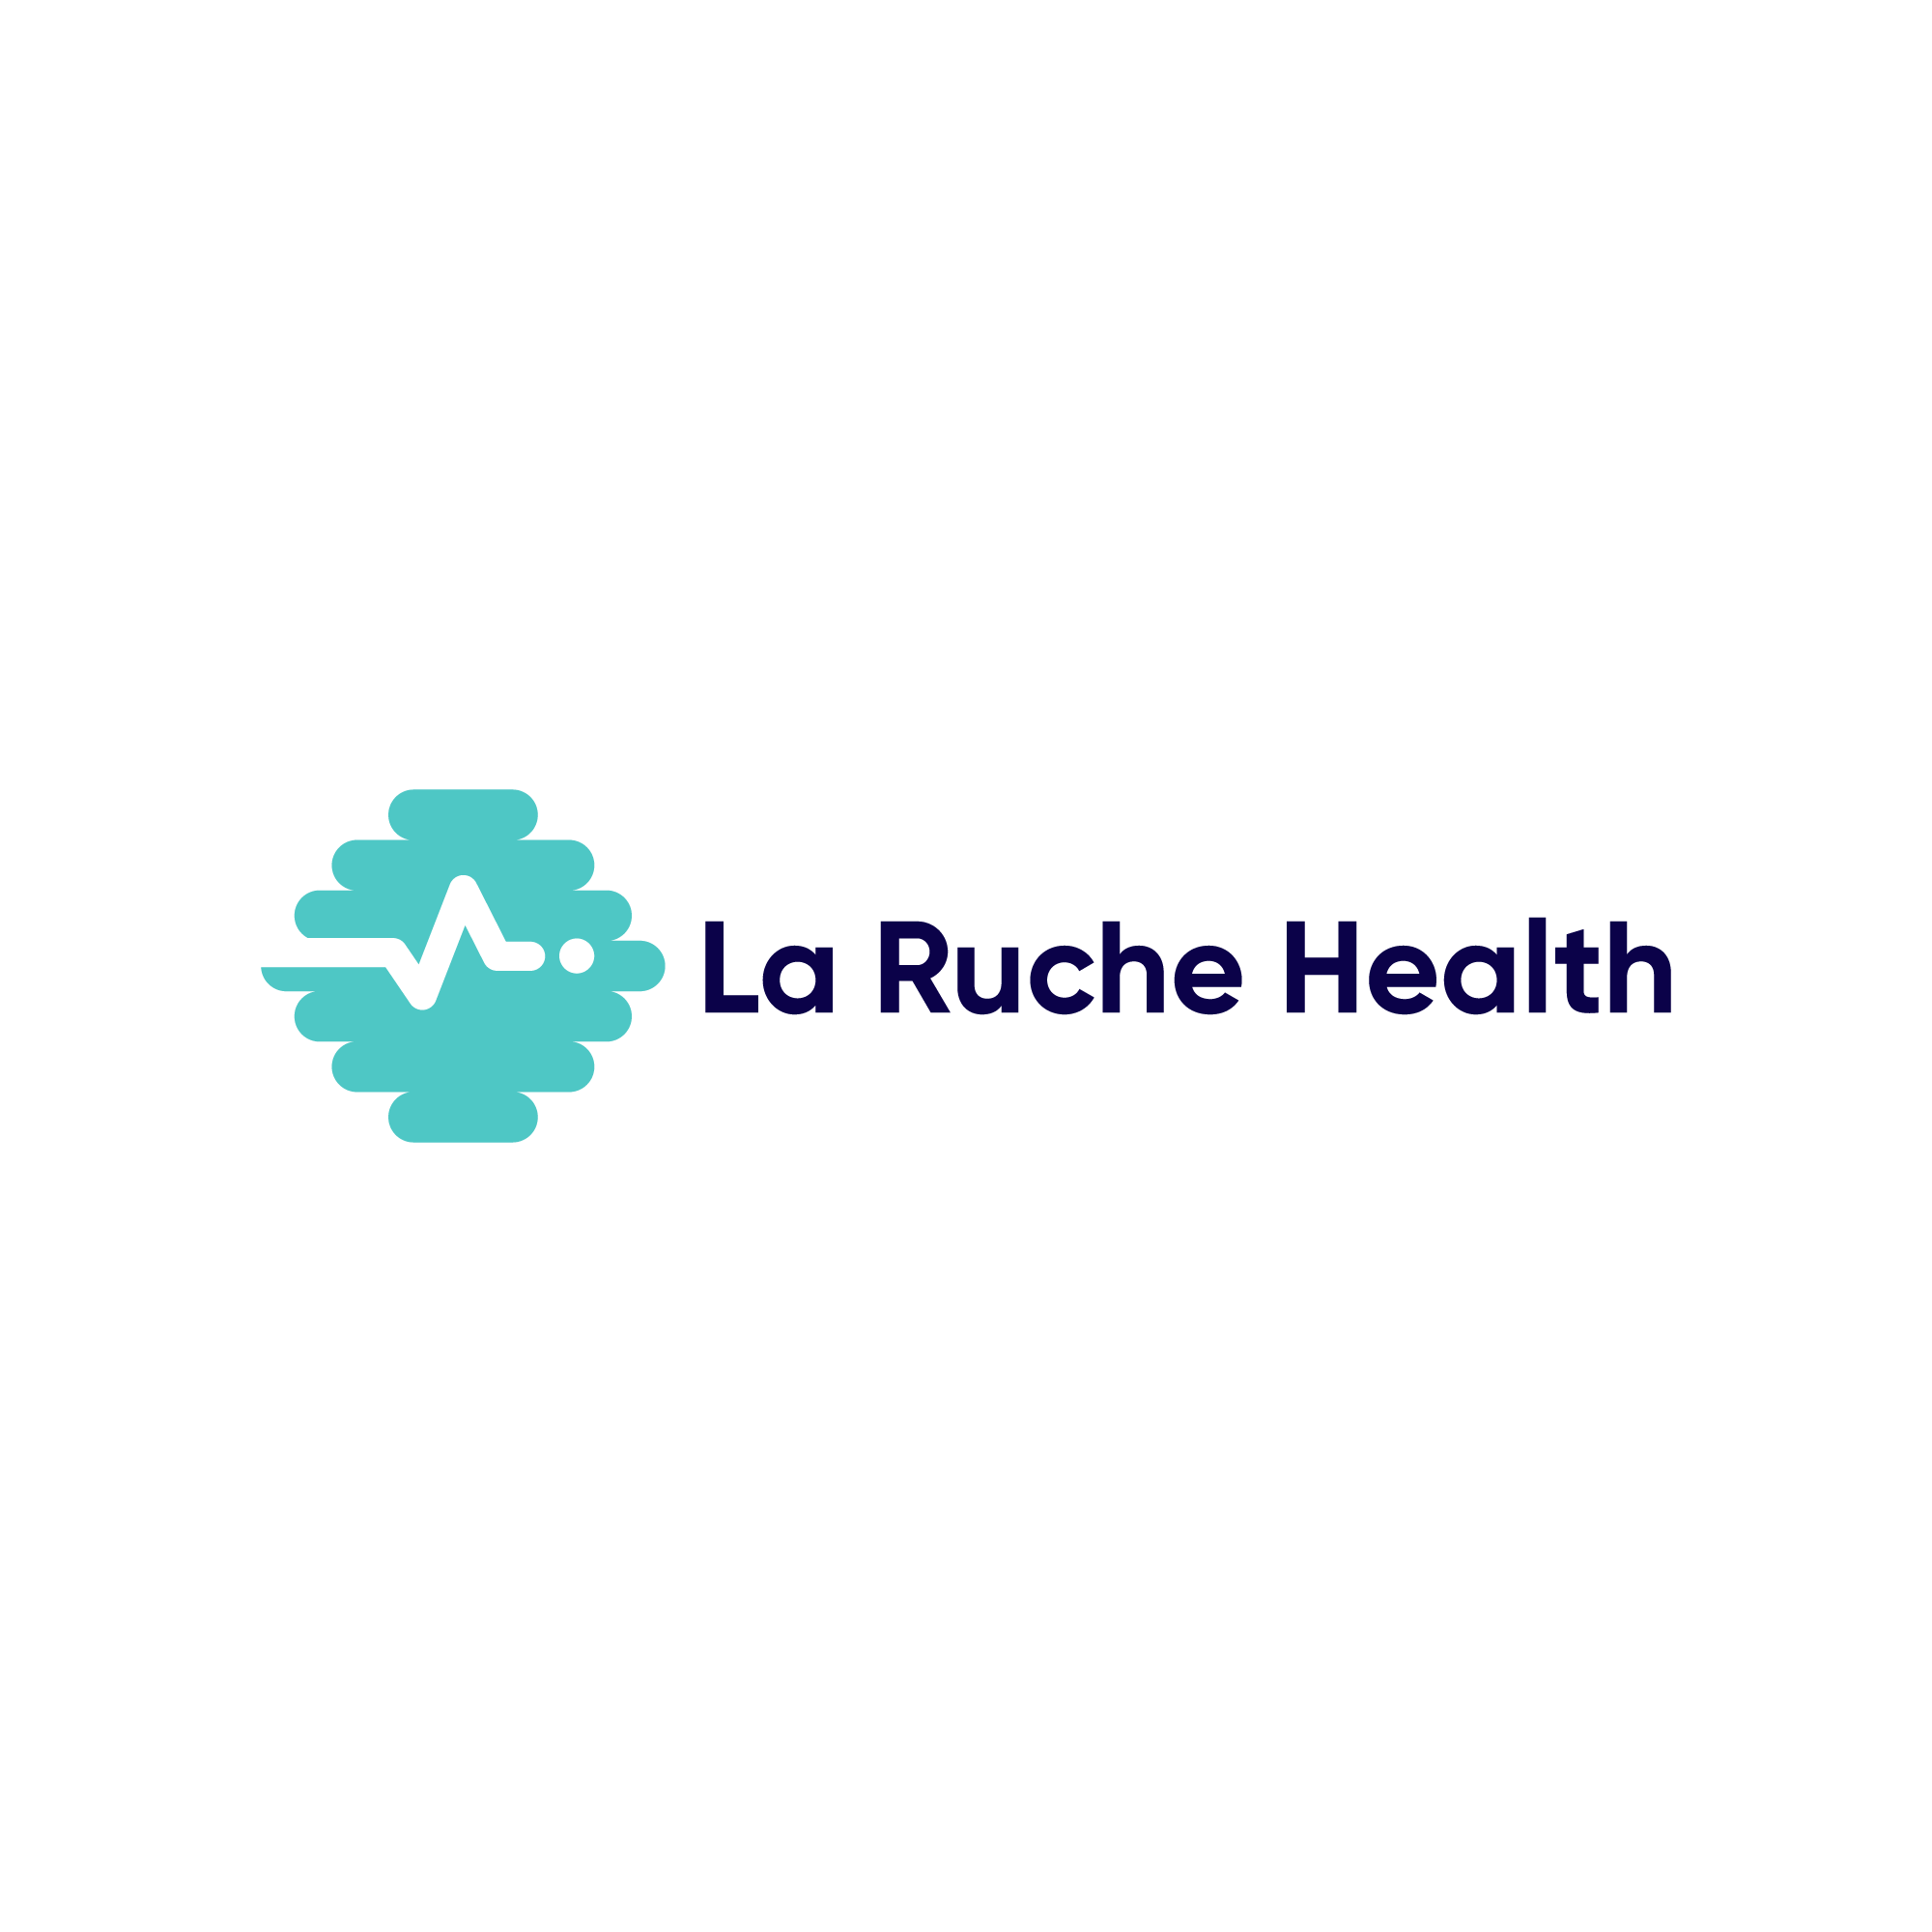 La Ruche Health-A2 (blue)